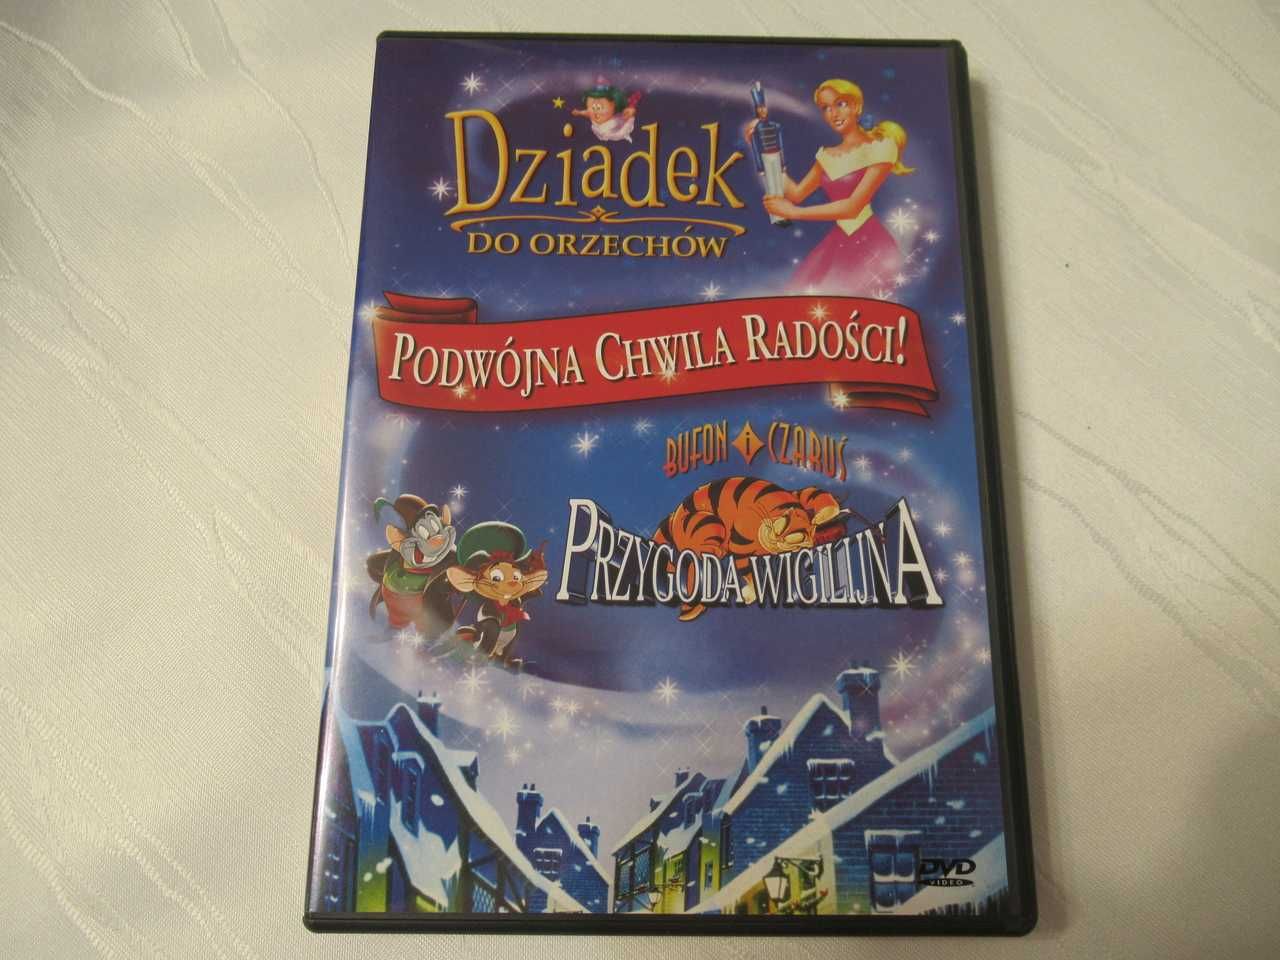 Dziadek do orzechów, Przygoda wigilijna - DVD - napisy pl